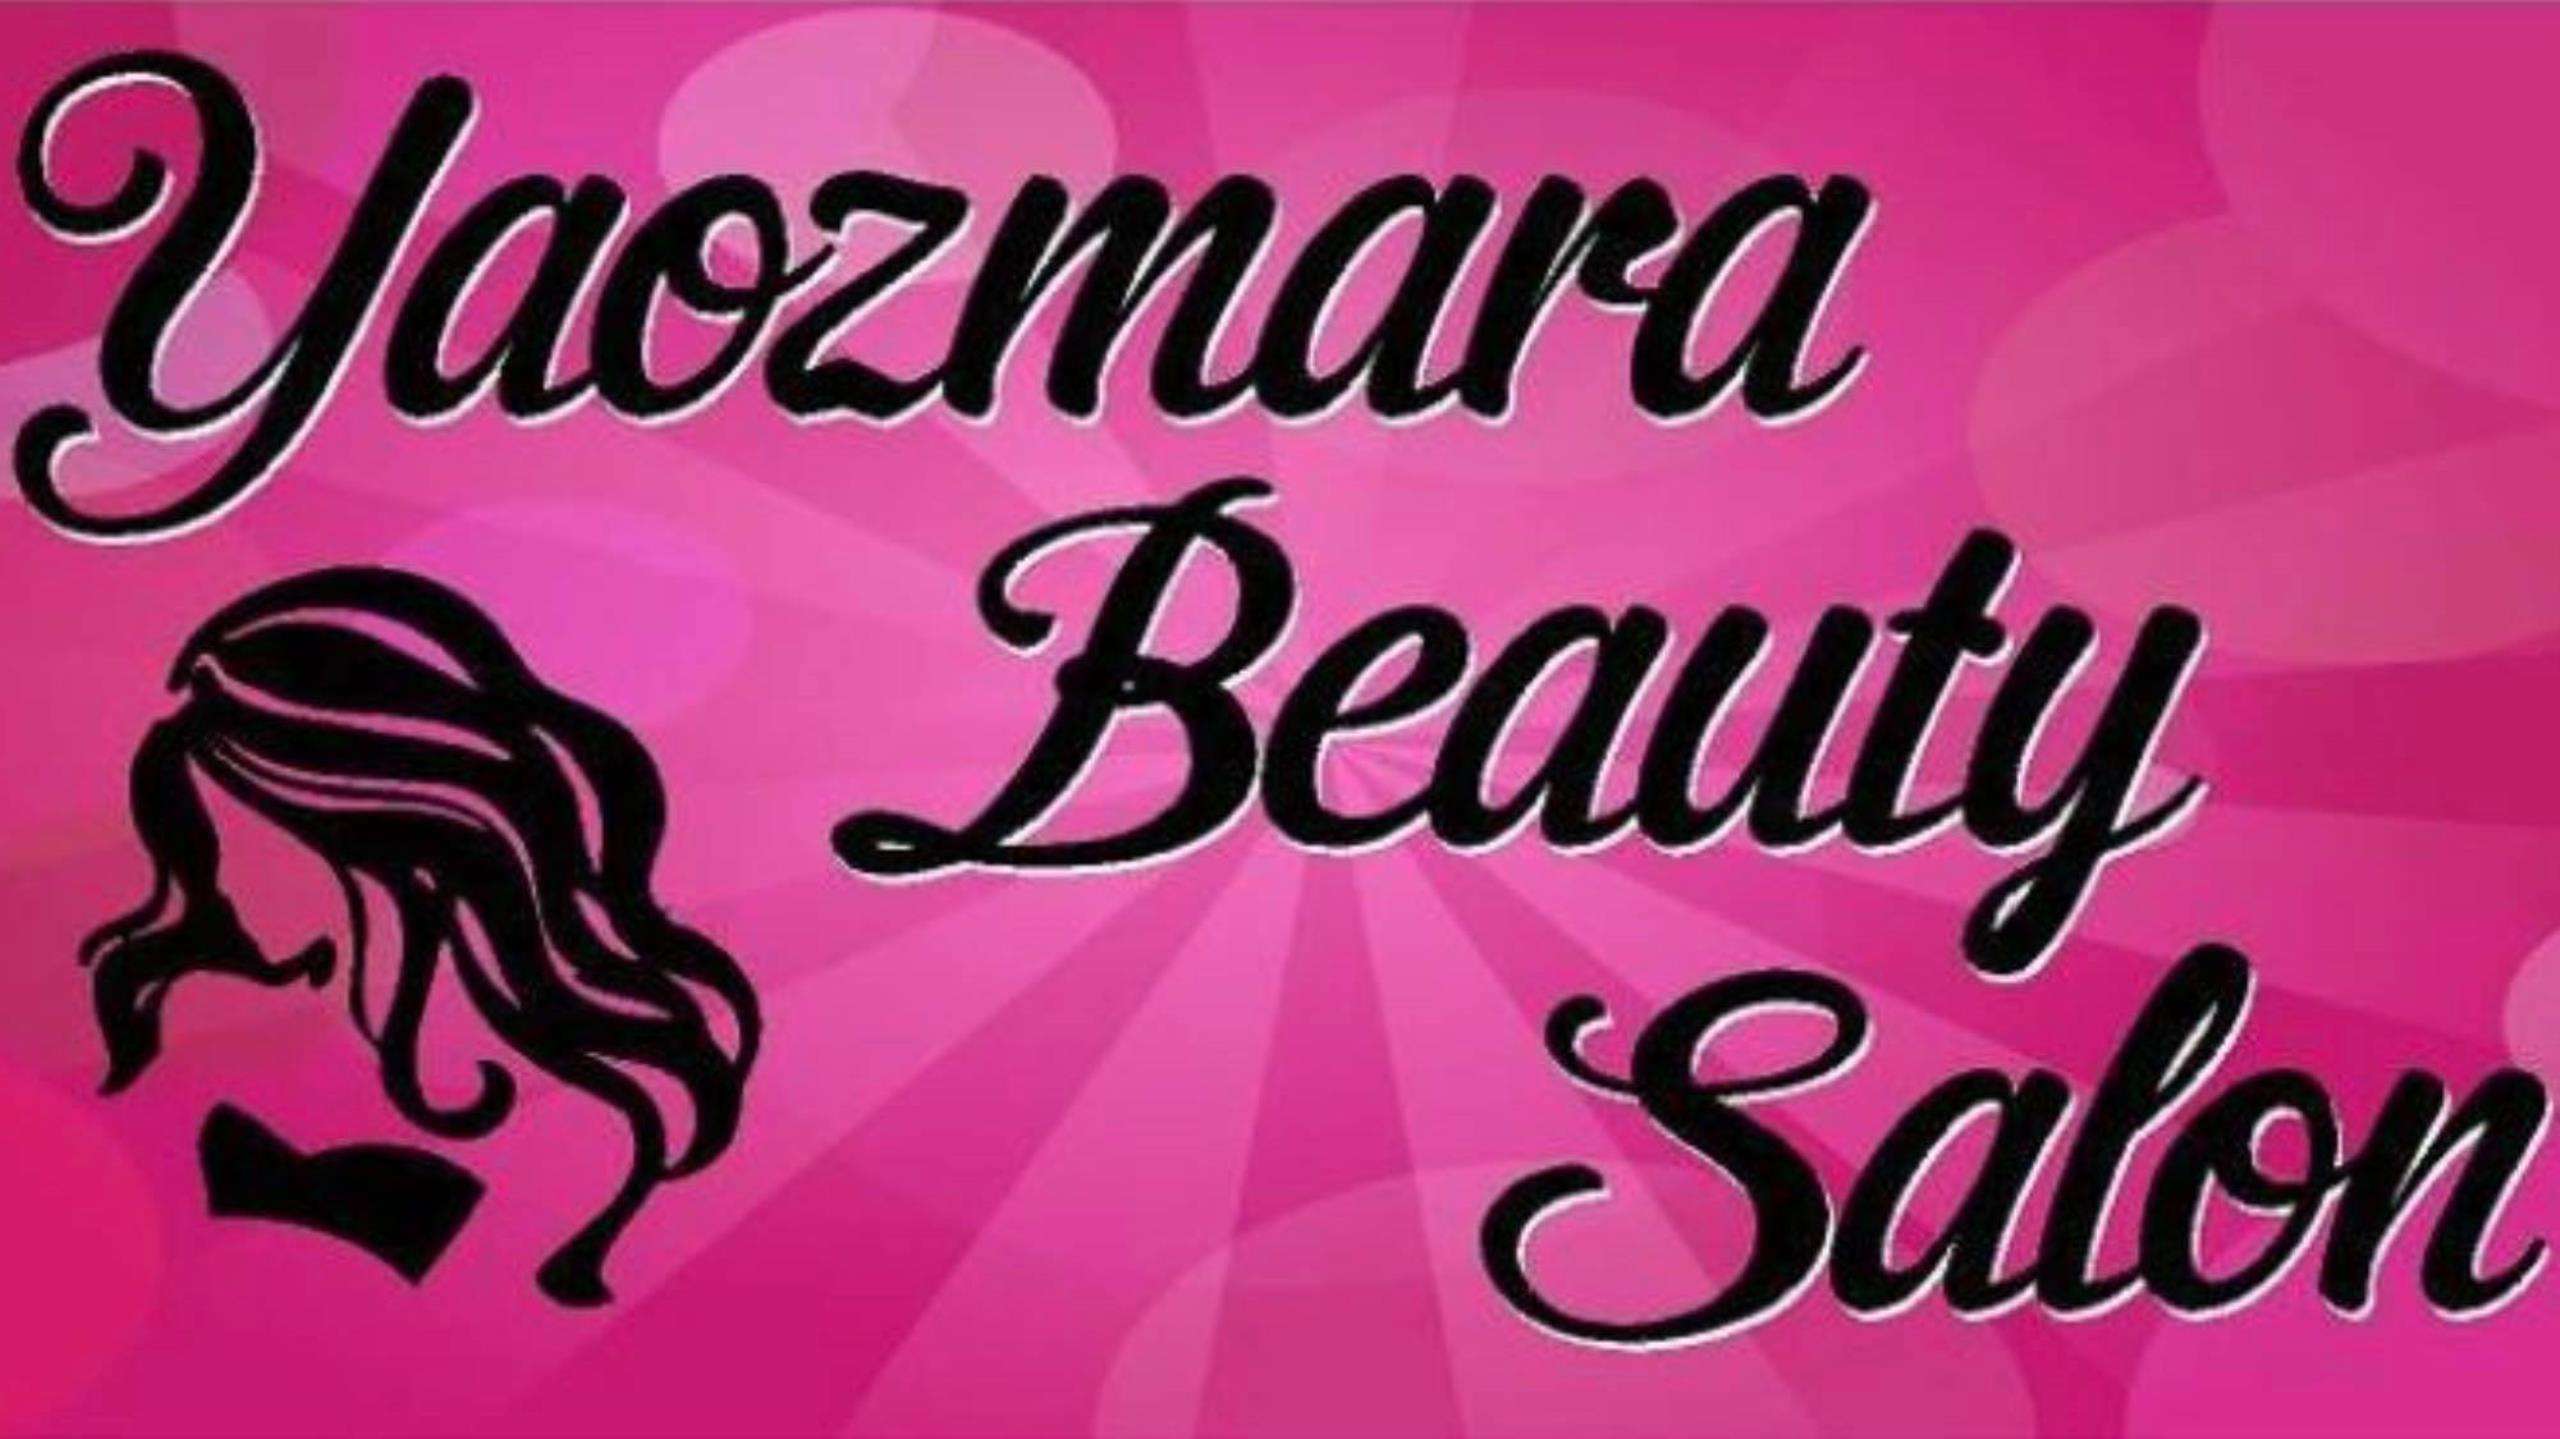 Yaozmara Beauty Salon Logo